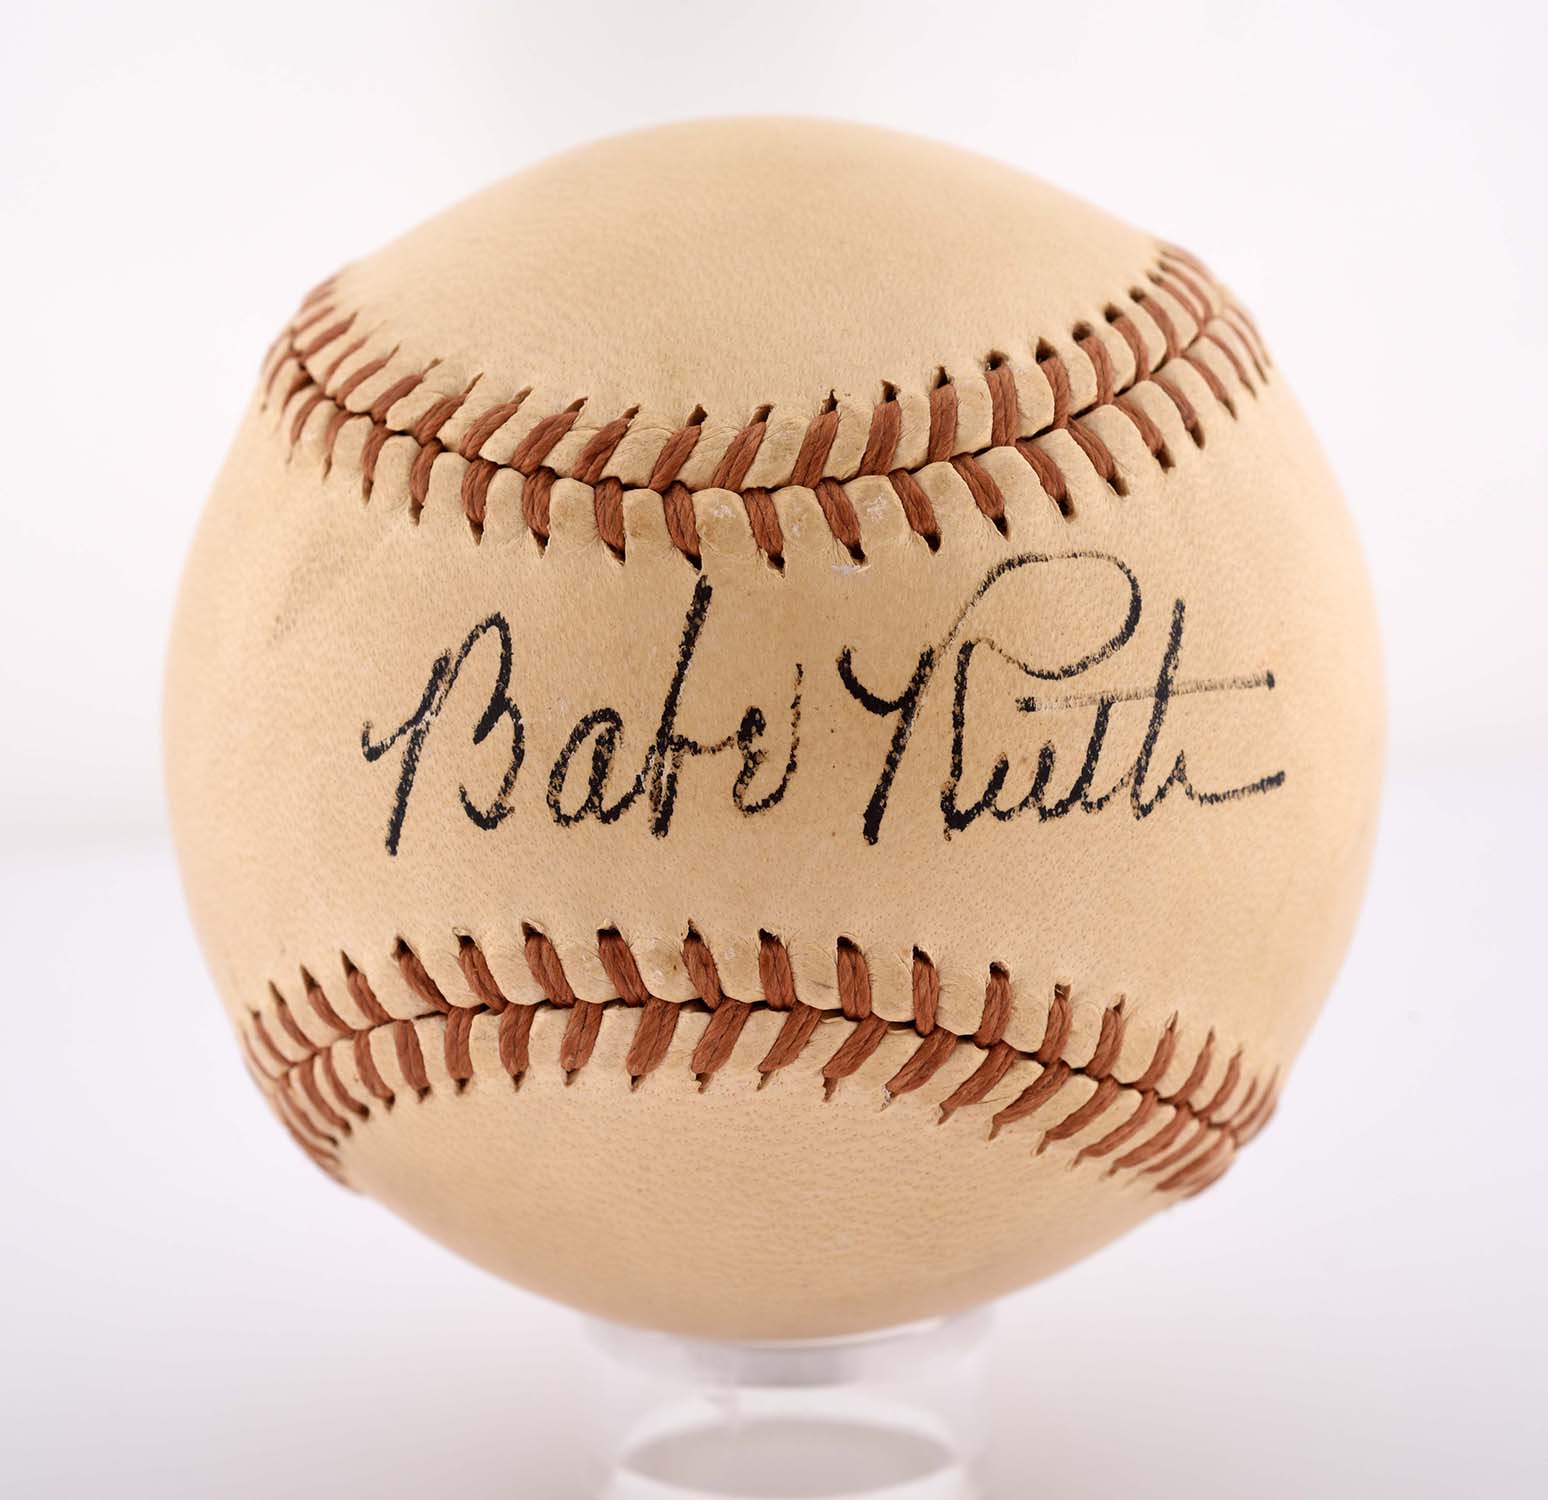 Spectacular Babe Ruth Single Signed Baseball, estimated at $20,000-40,000.